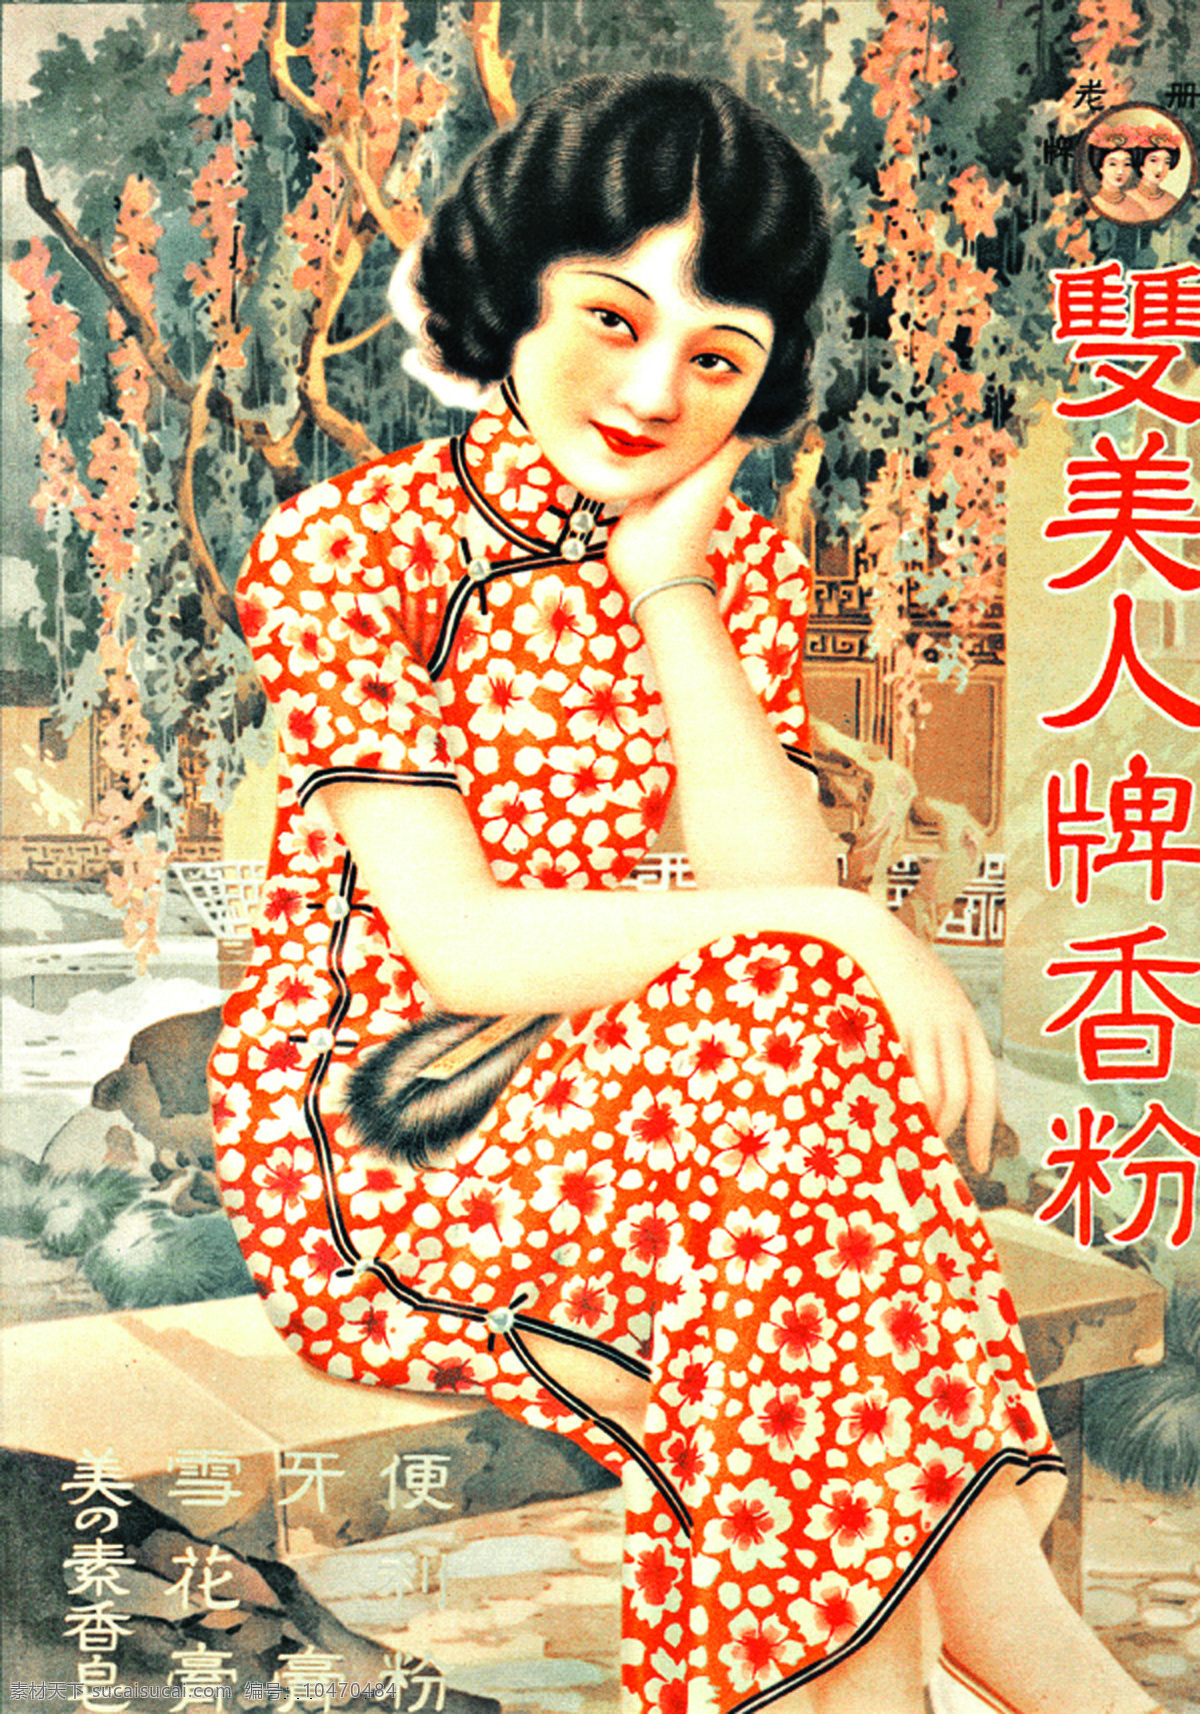 月份牌 老 上海 月份 牌 广告 老广告 老上海 大美女 文化艺术 绘画书法